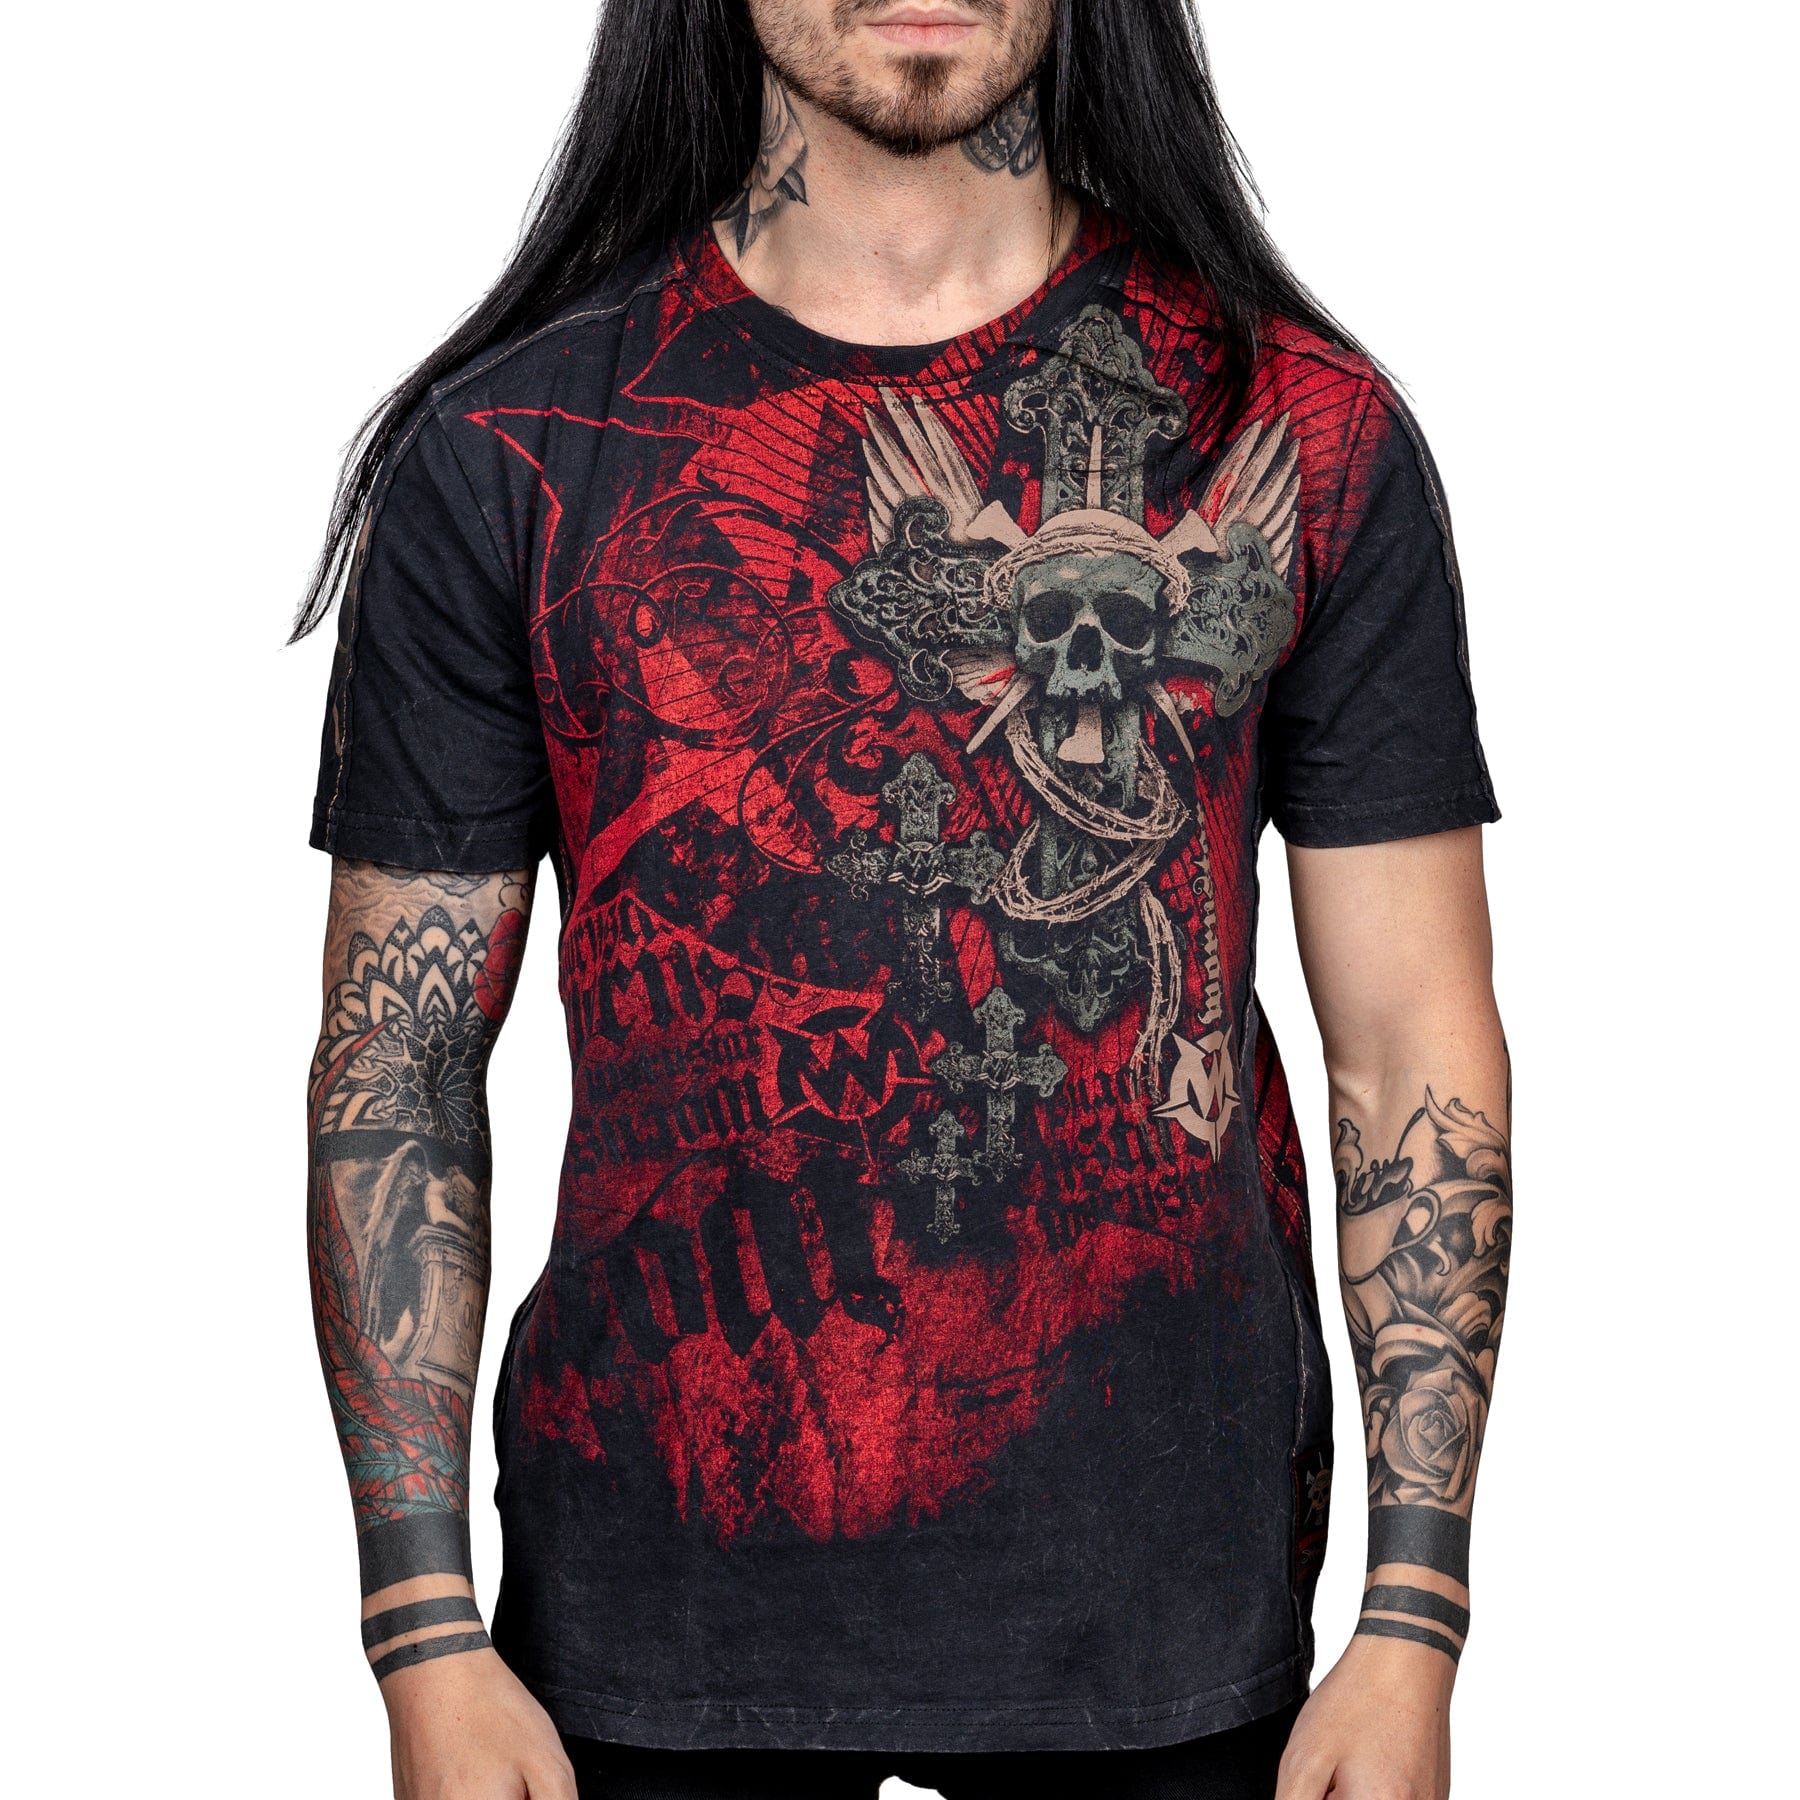 Wornstar Clothing Mens Tee Resurrection Skull T-shirt